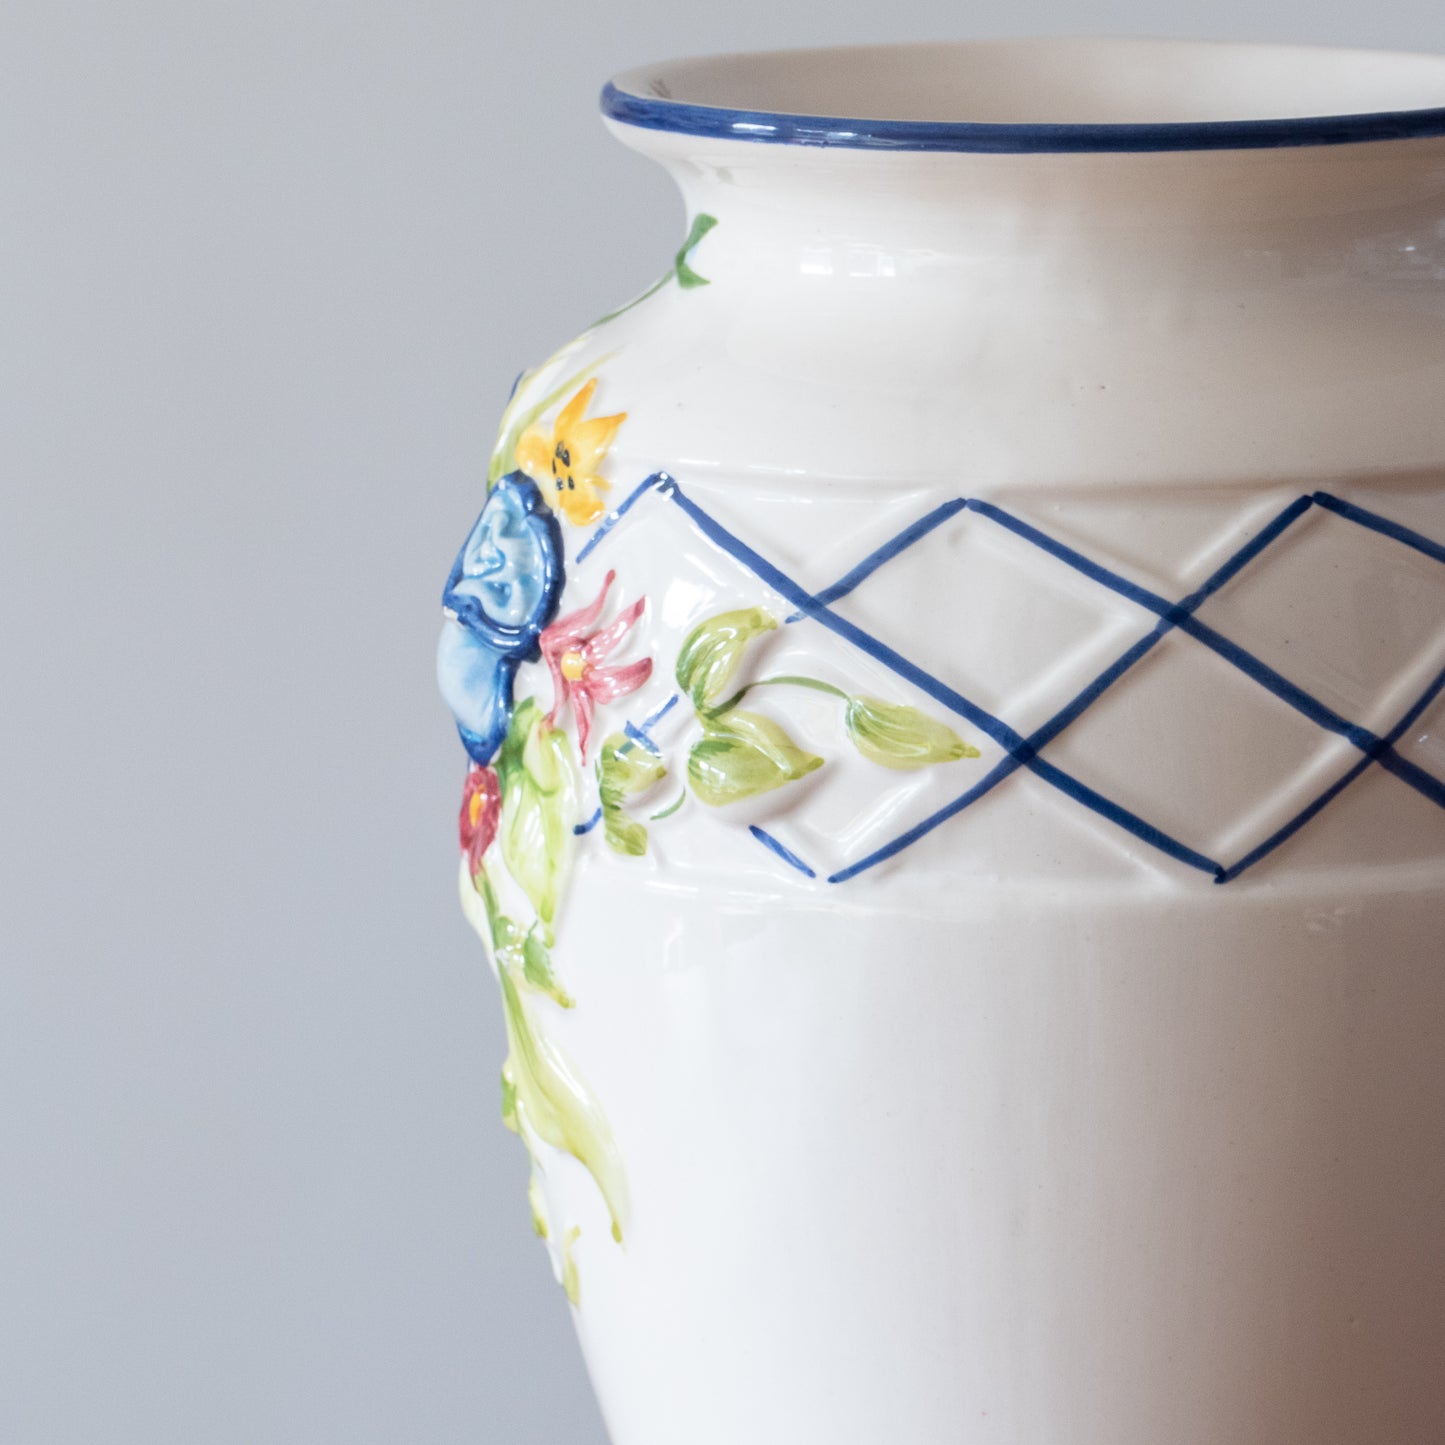 Grand vase en barbotine, peint à la main